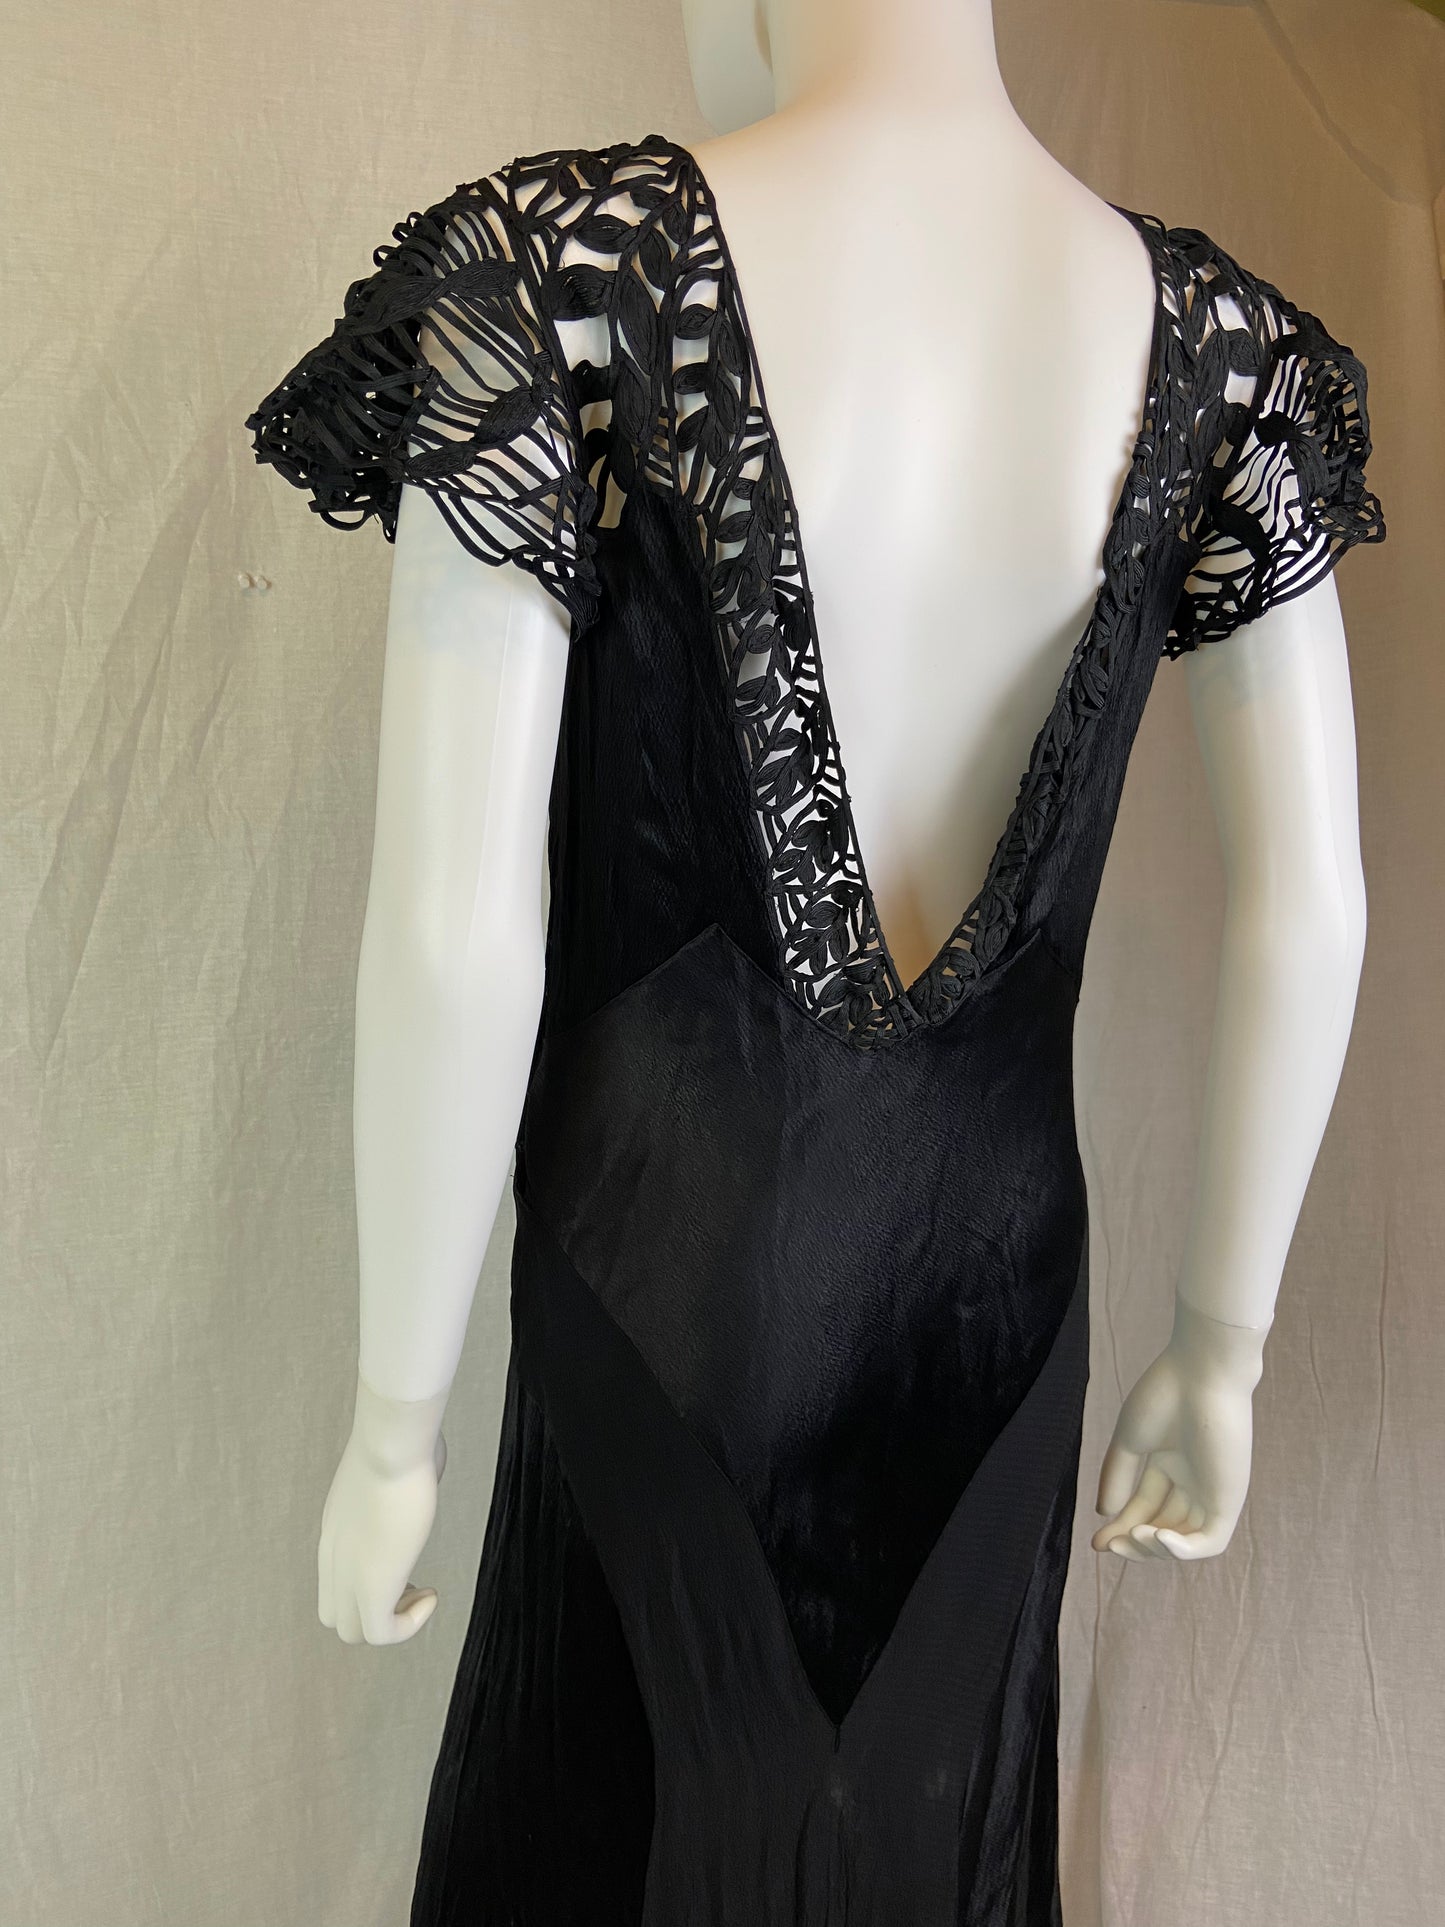 Antique Black Woven Lace Silk Bias Gown